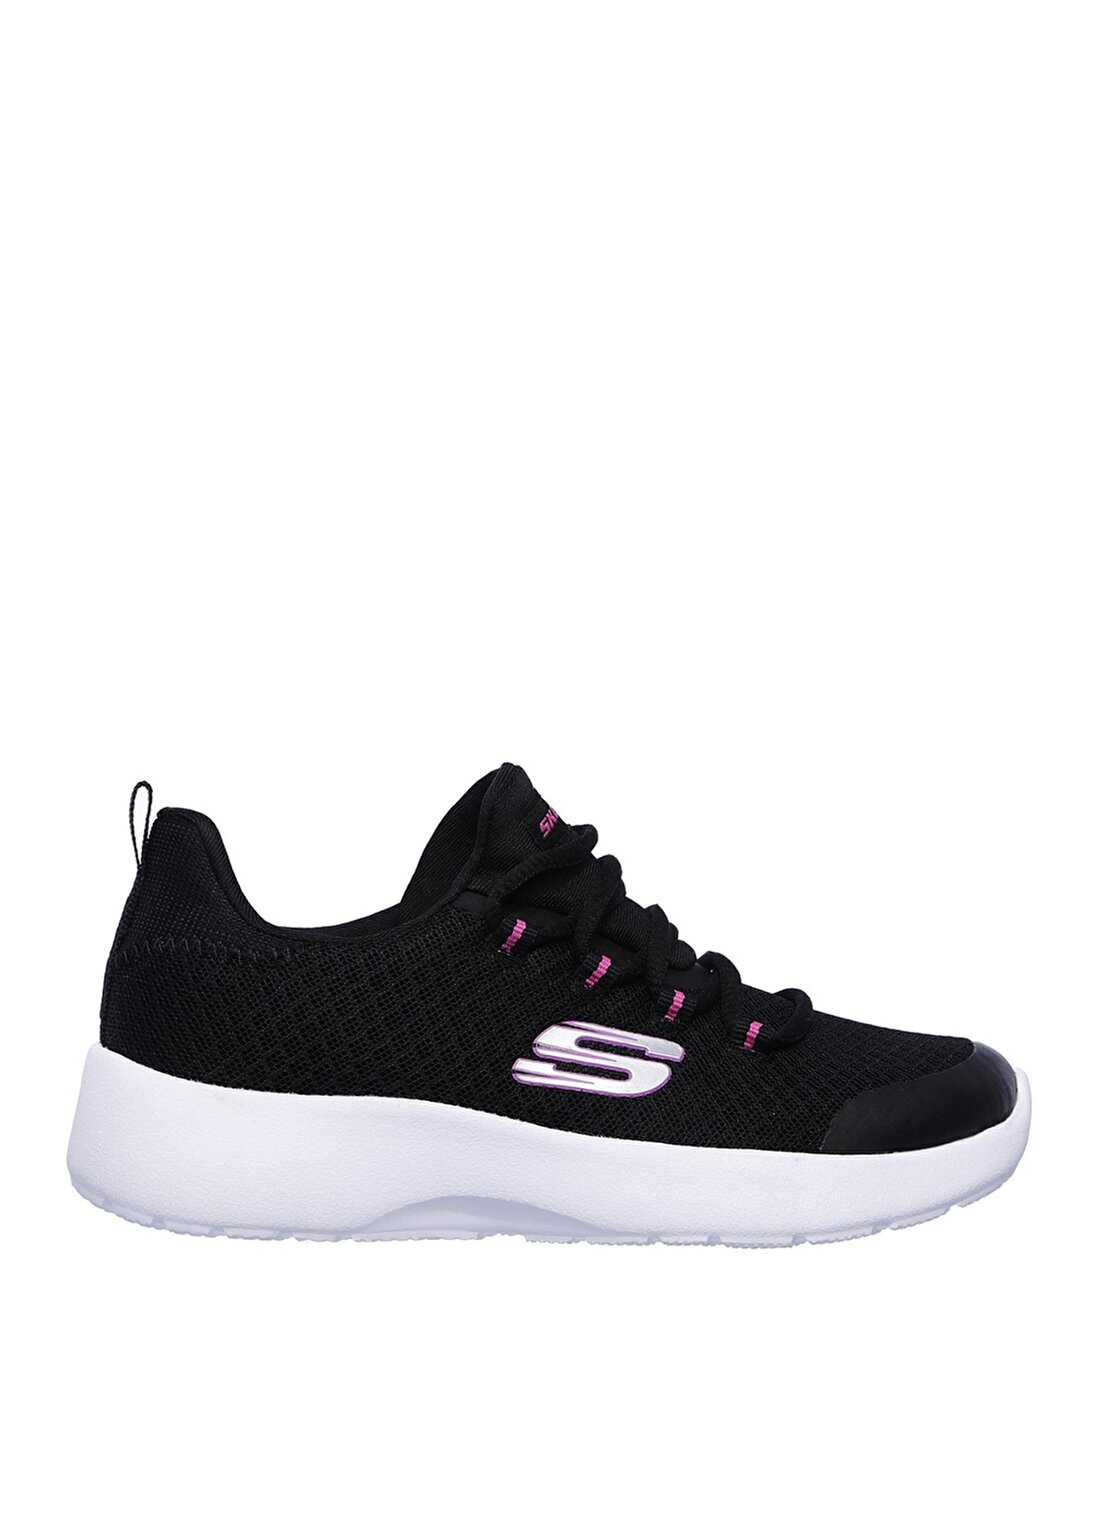 Skechers Pembe - Beyaz Kız Çocuk Yürüyüş Ayakkabısı